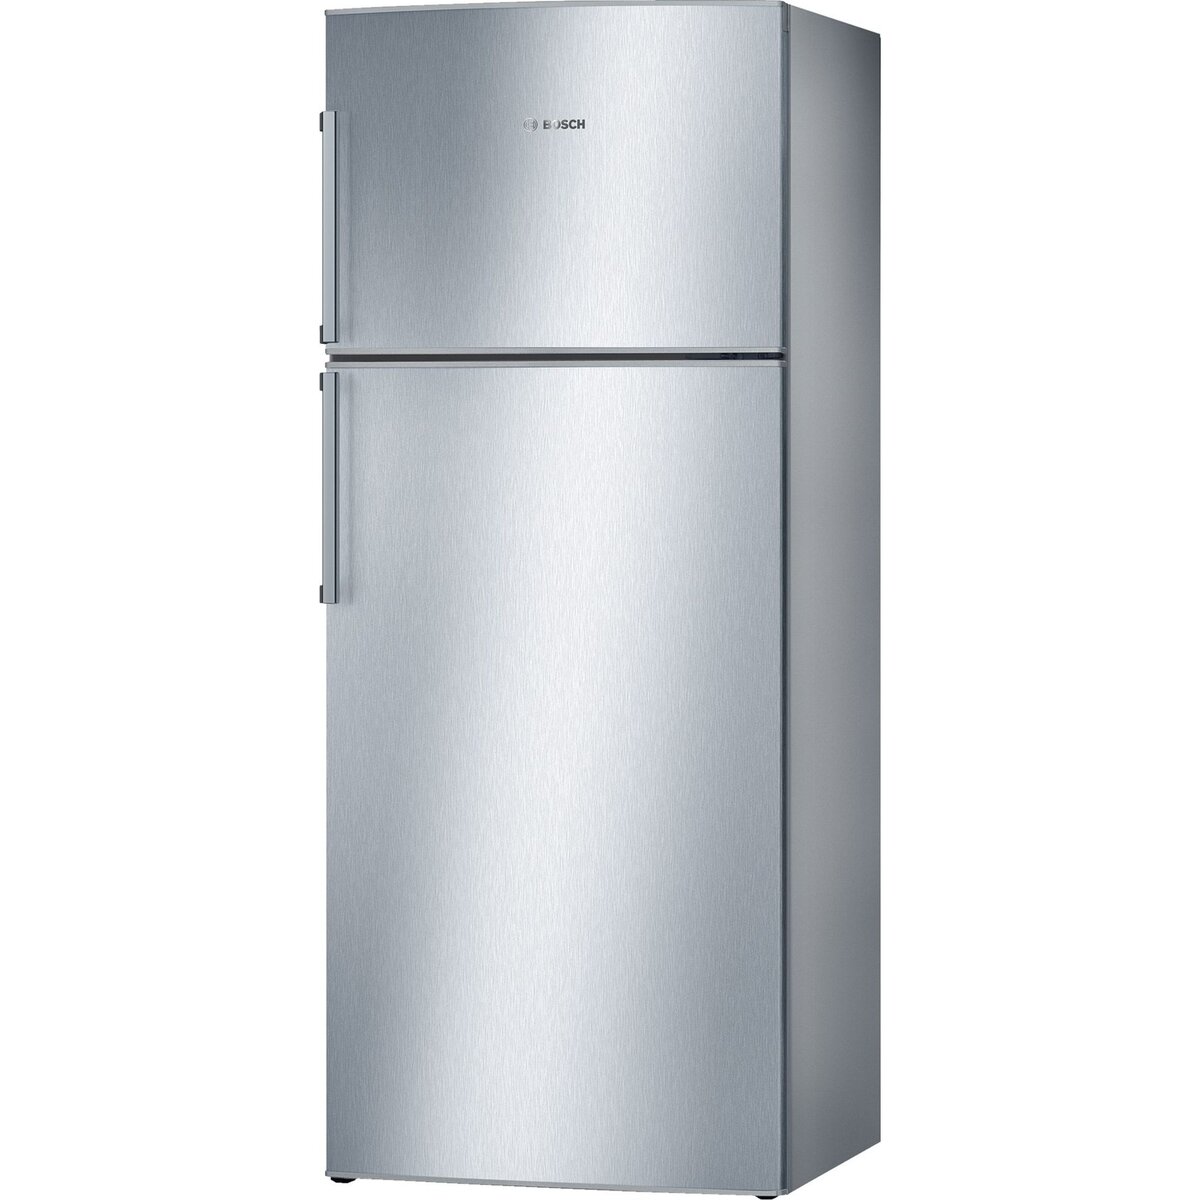 BOSCH Réfrigérateur 2 portes KDN42VL20, 332 L, Froid No Frost